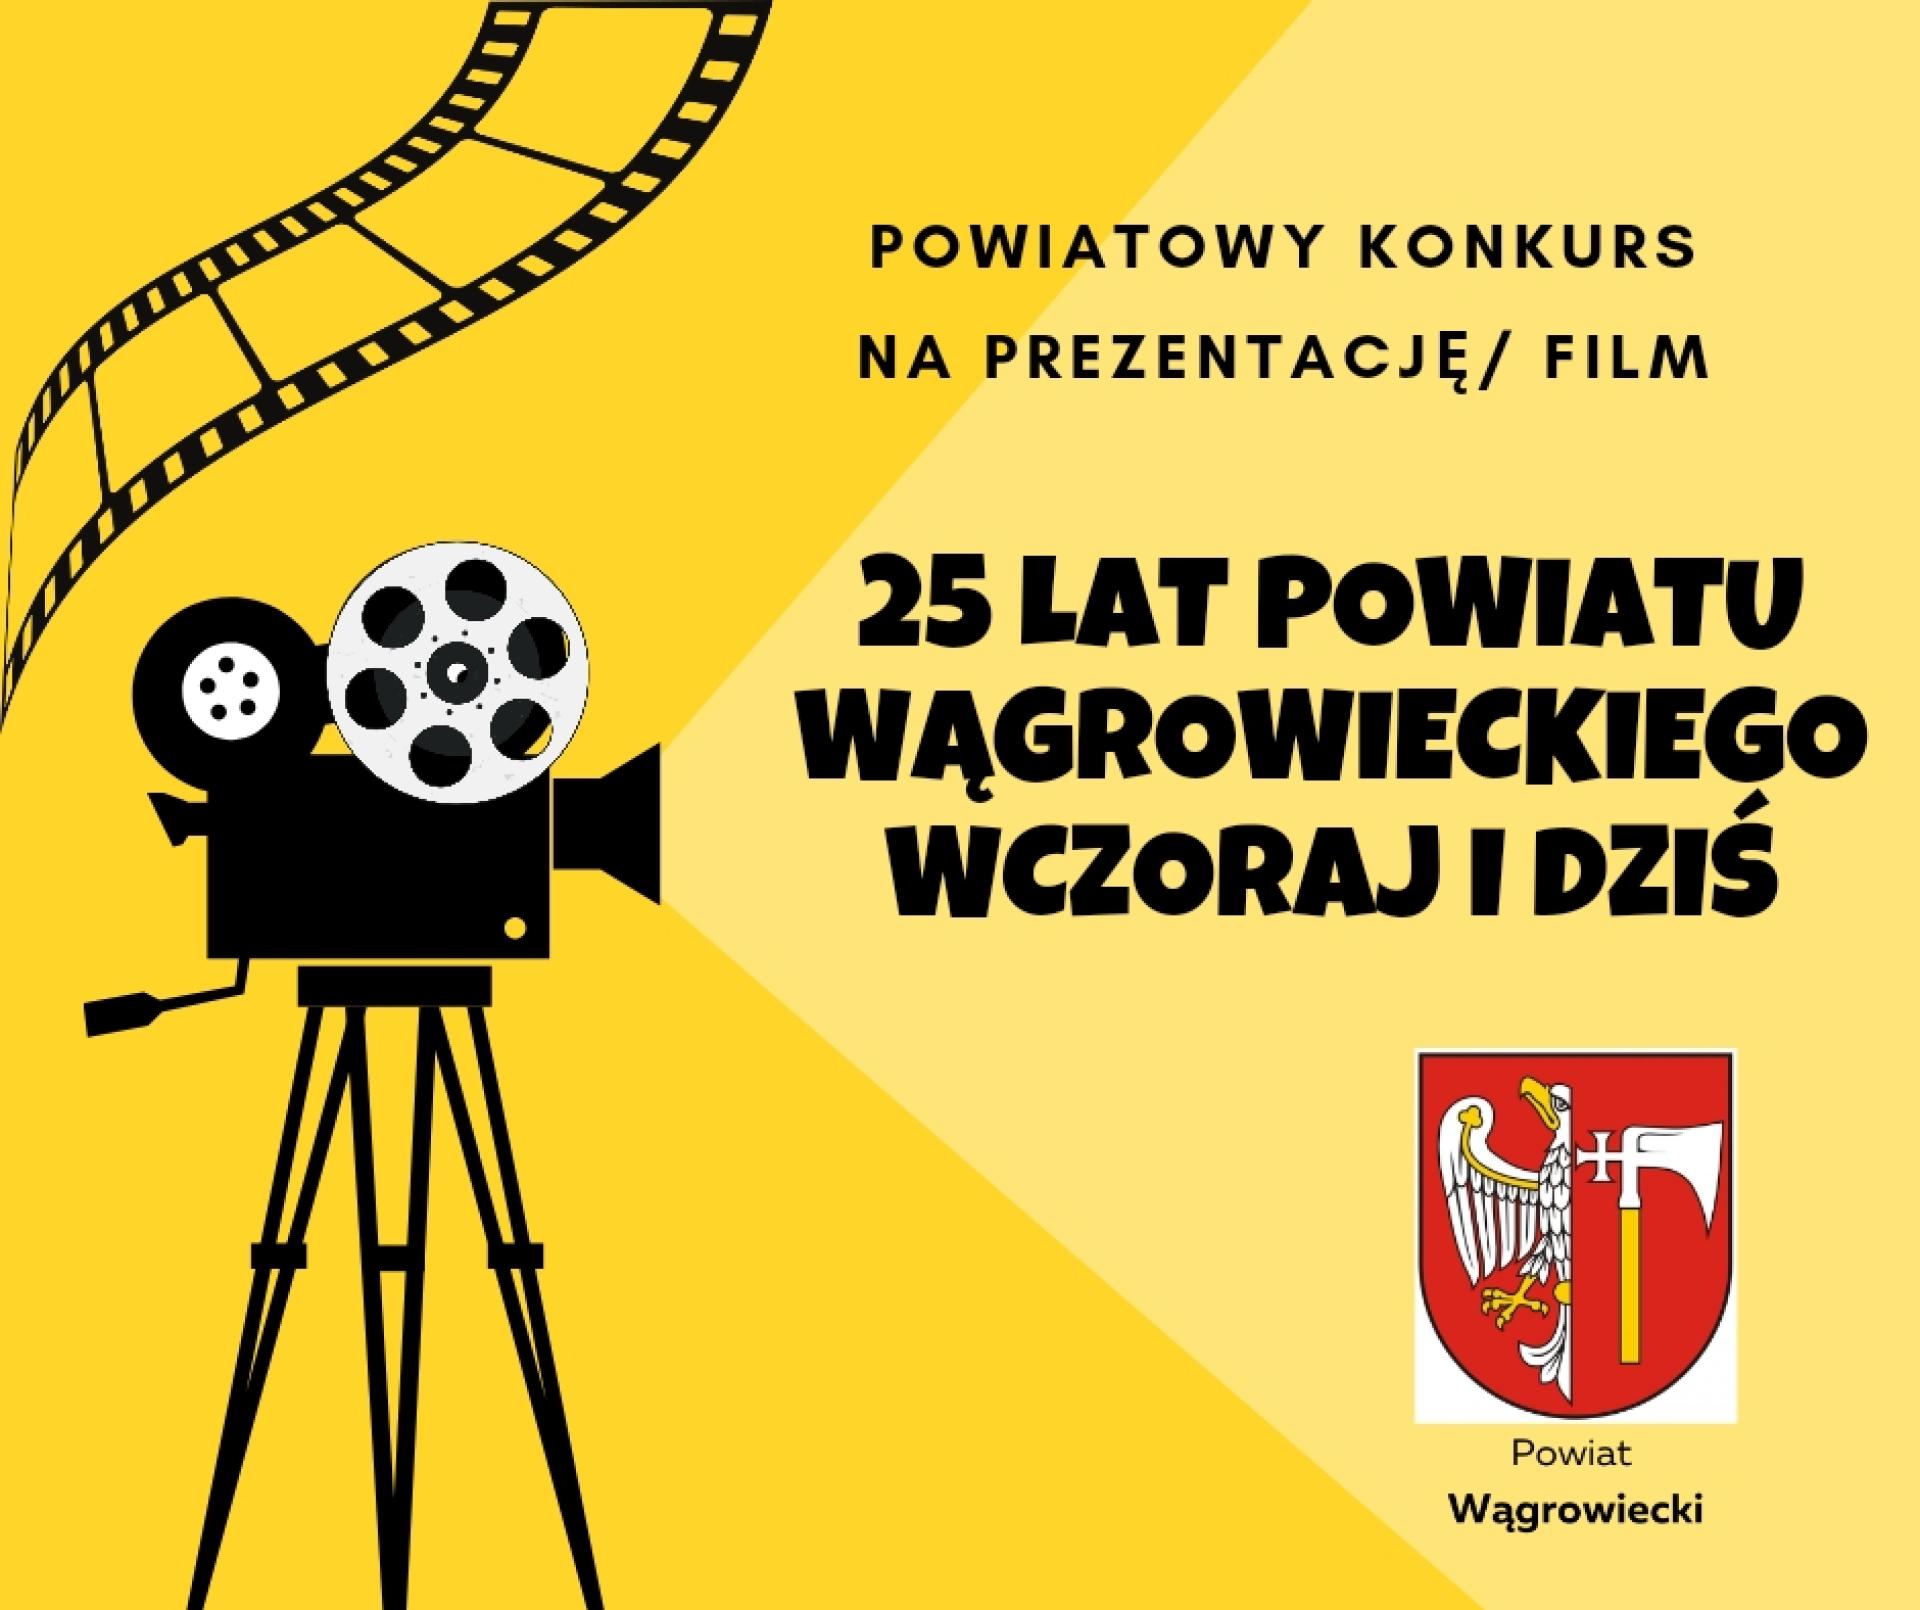 Powiatowy Konkurs na Prezentację/Film "25 lat Powiatu Wągrowieckiego wczoraj i dziś"